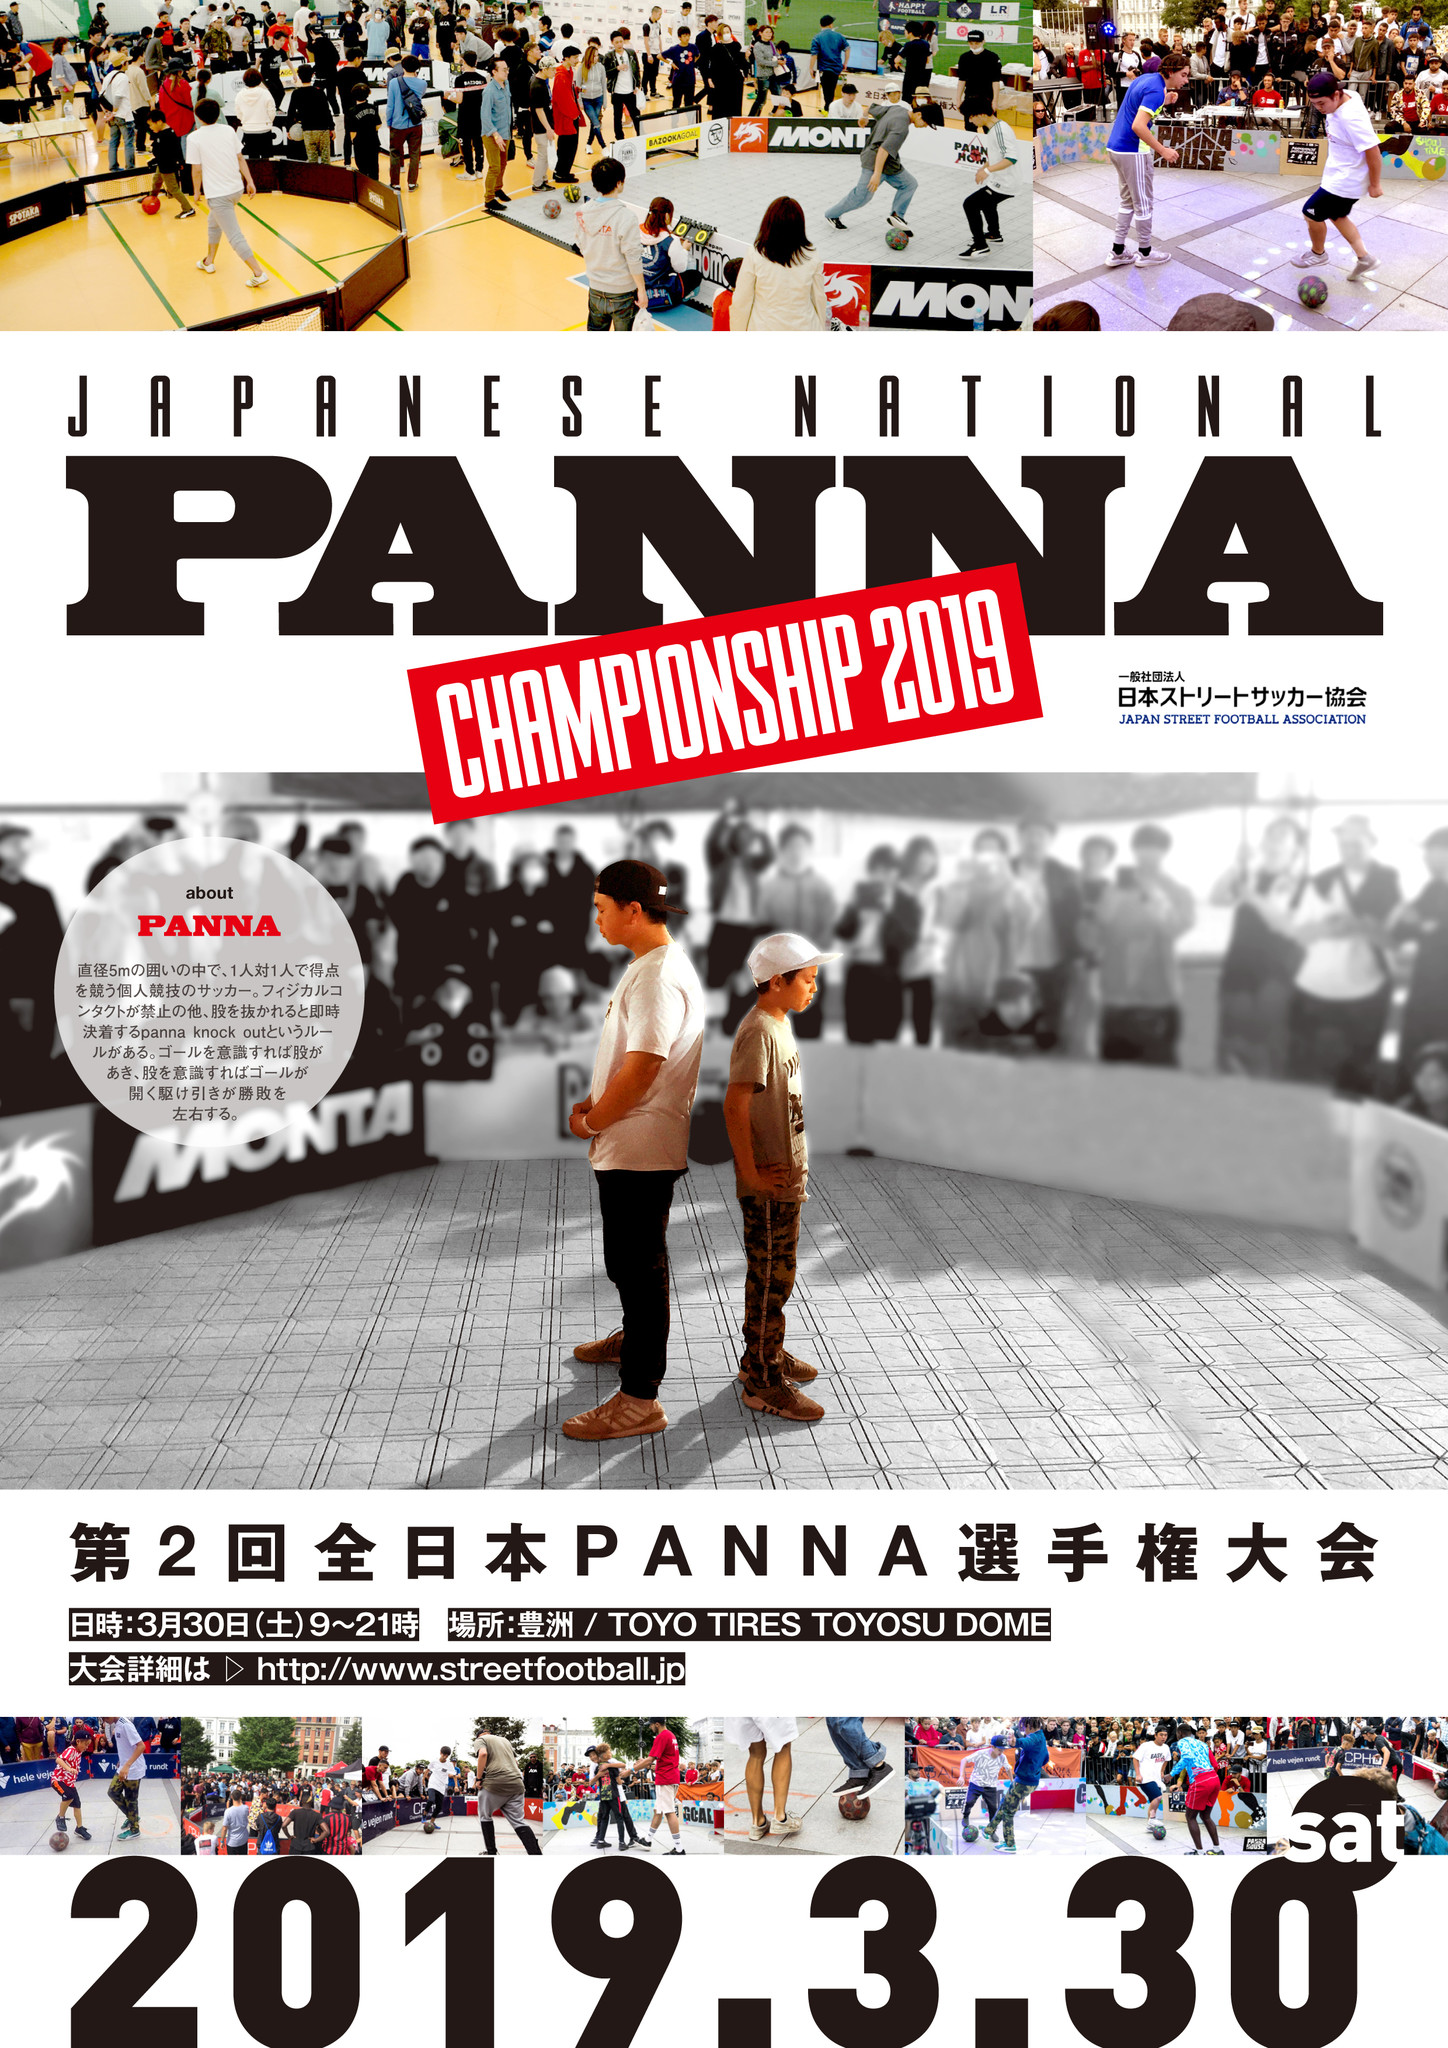 3 30 土 第二回全日本panna選手権大会 開催及び出場者募集のお知らせ 一般社団法人 日本ストリートサッカー協会のプレスリリース